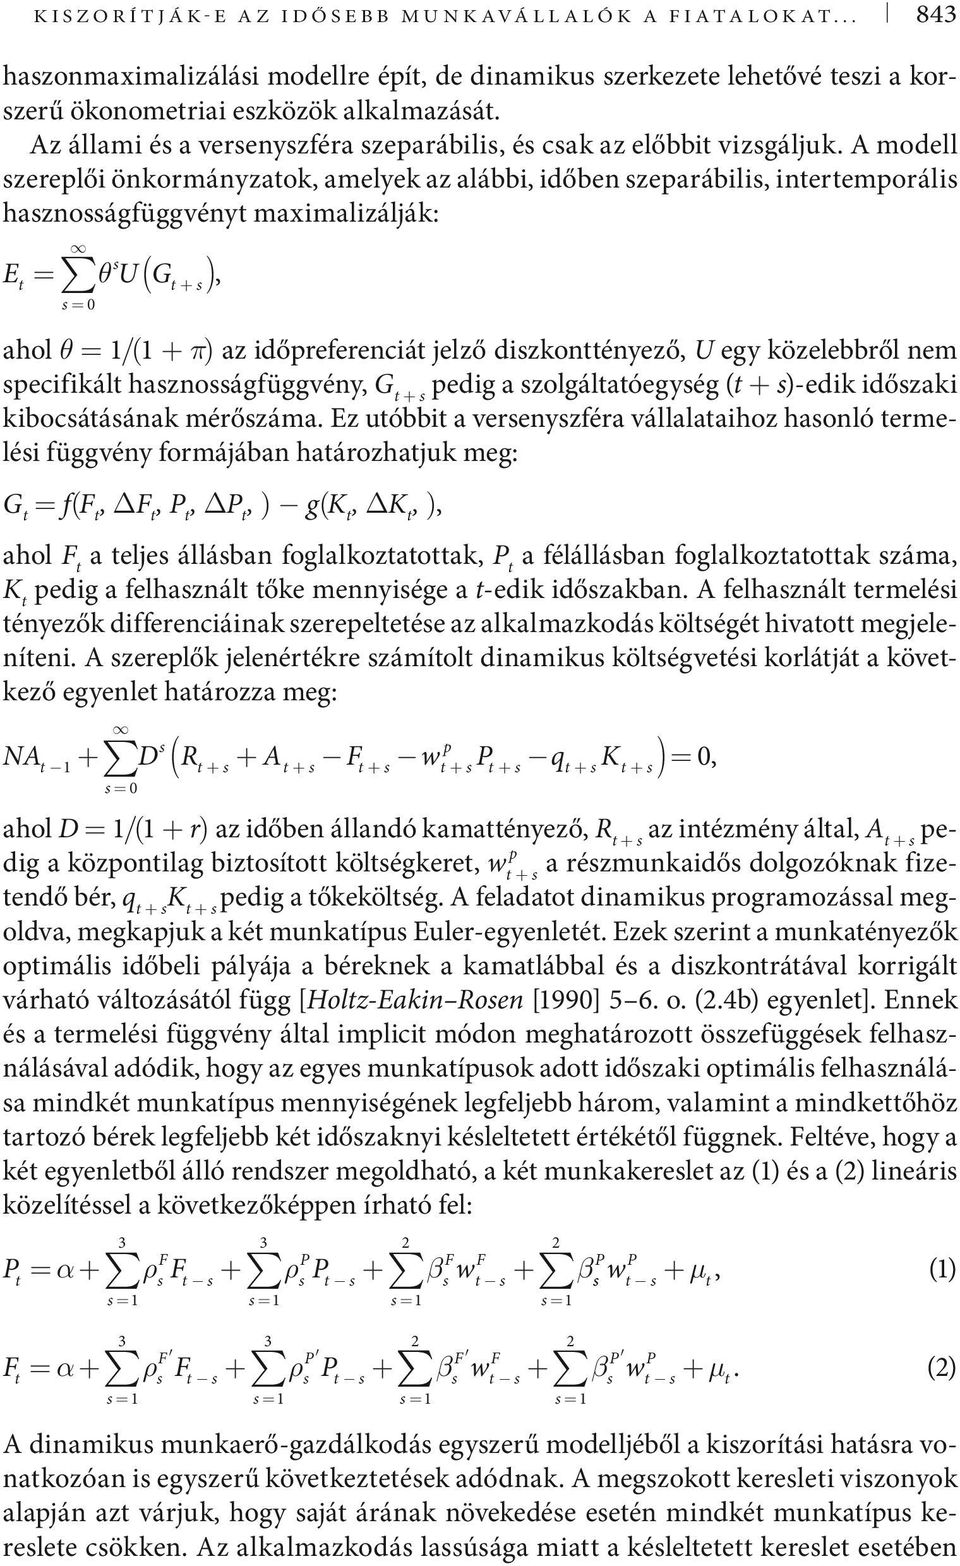 A modell zereplői önkormányzatok, amelyek az alábbi, időben zeparábili, intertemporáli haznoágfüggvényt maximalizálják: E t = θ U( Gt + ), = 0 ahol θ = 1/(1 + π) az időpreferenciát jelző